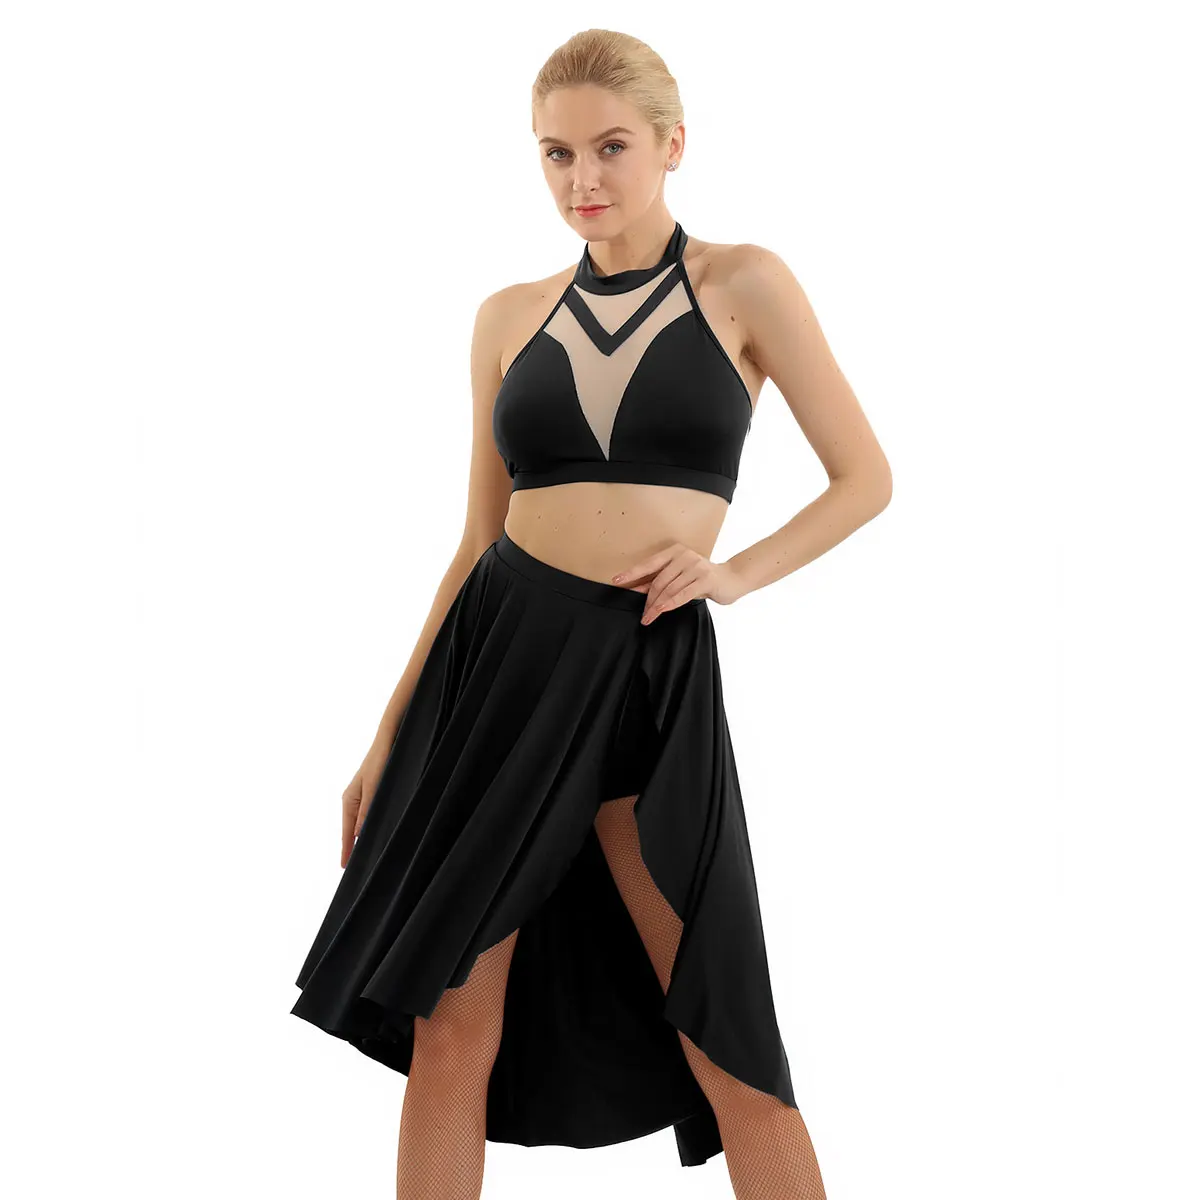 Женская Асимметричная одежда для лирических танцев iiniim, укороченный топ с открытой спиной и юбка, костюмы для латинских бальных танцев, Фигурное платье для катания на коньках - Цвет: Black